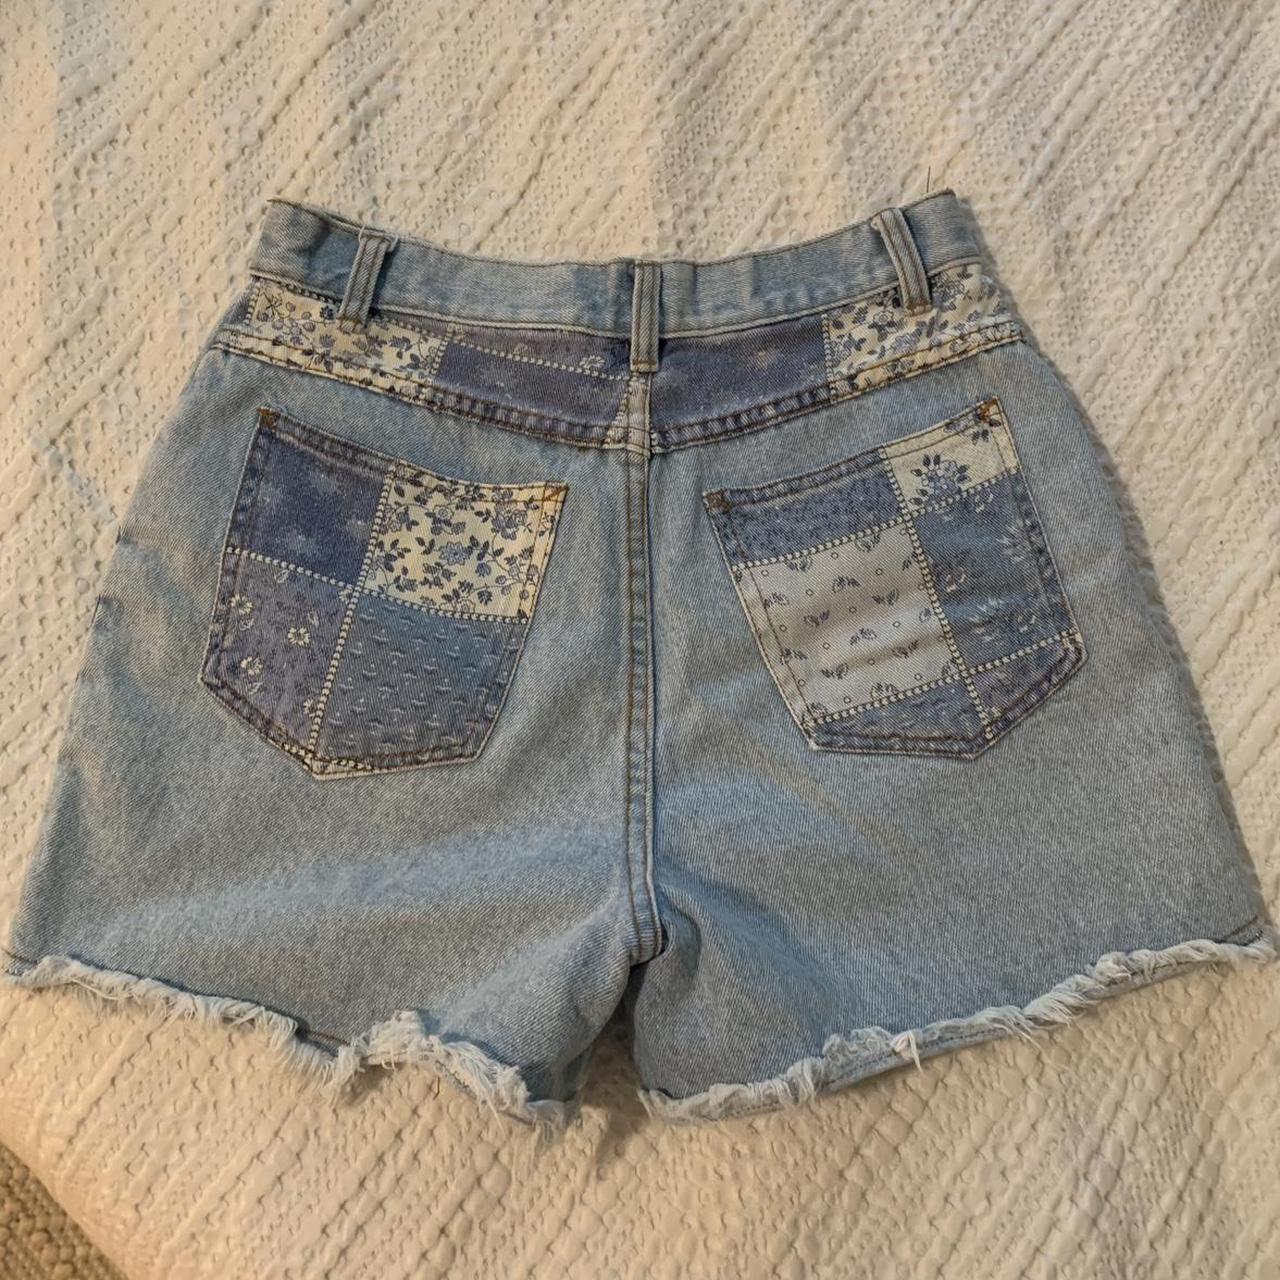 Cute patchwork print jean shorts. High rise waist.... - Depop